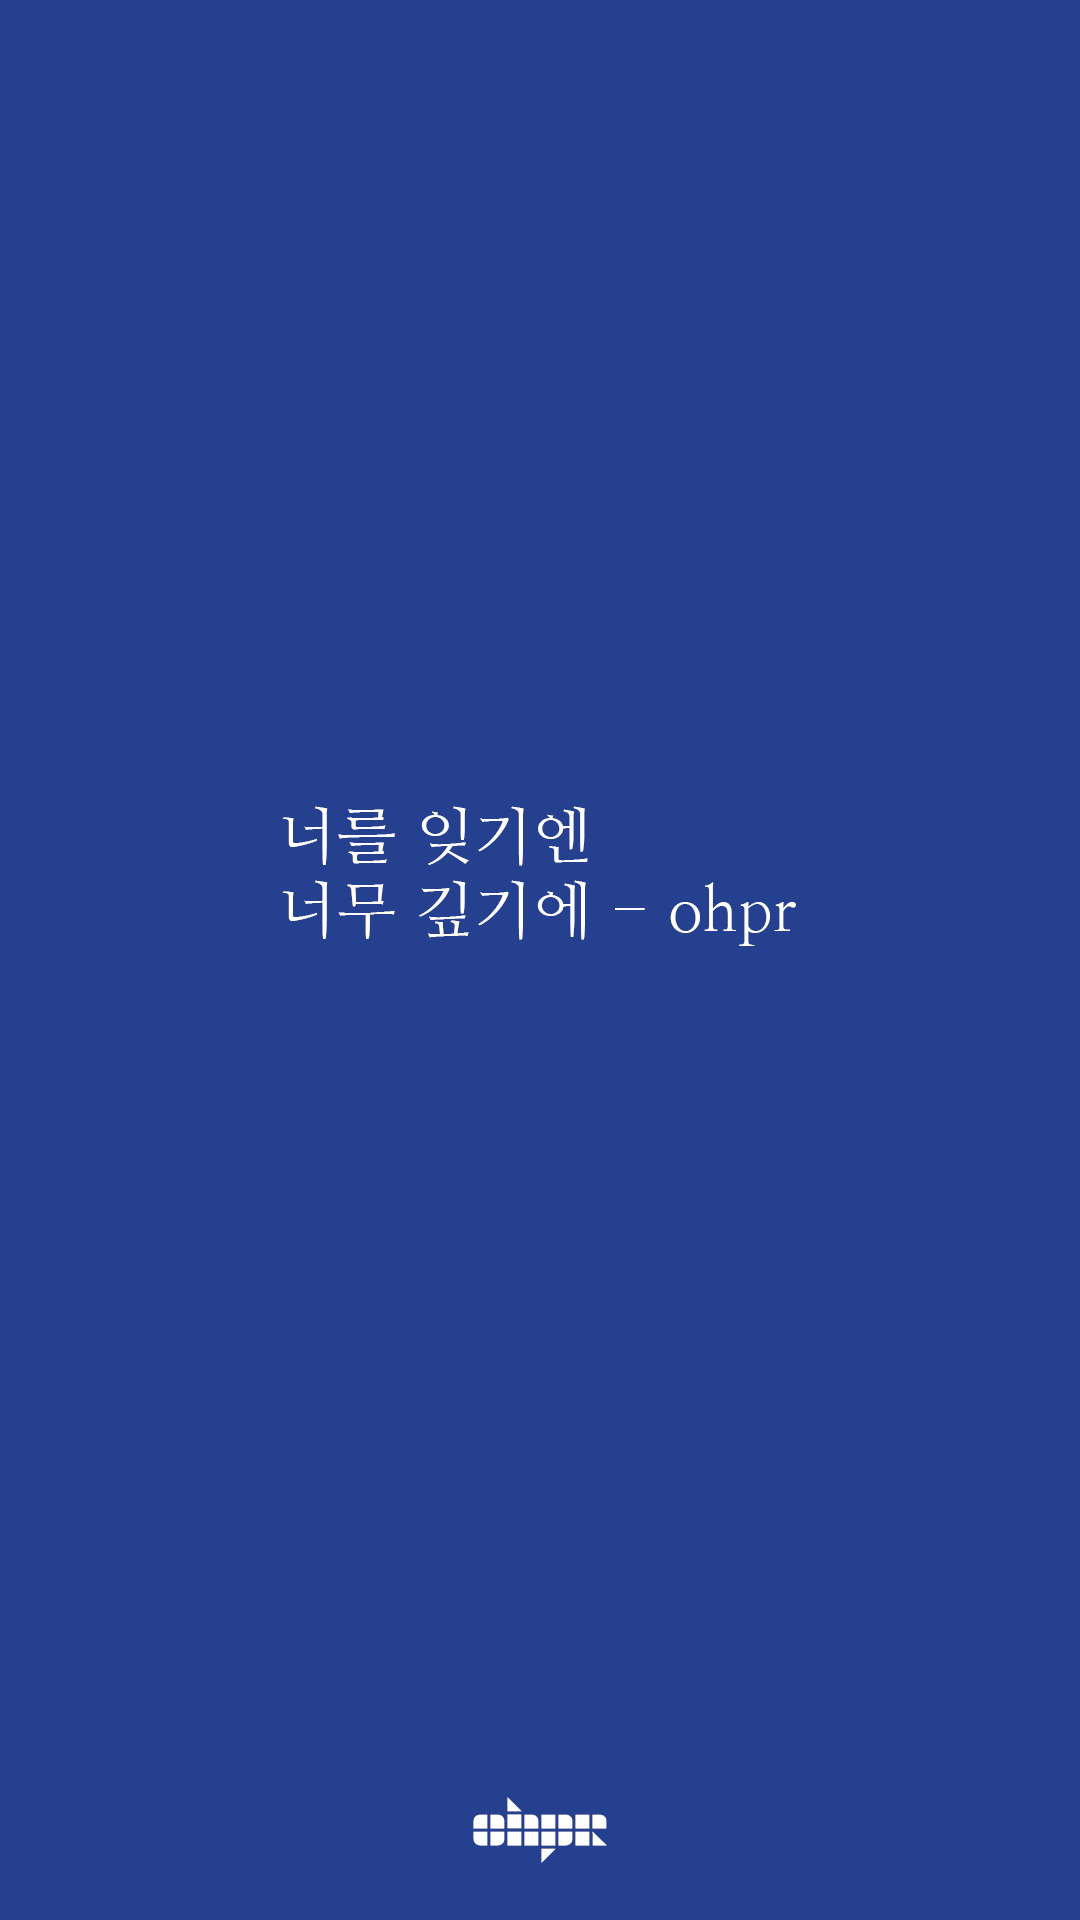 ohpr_wording36